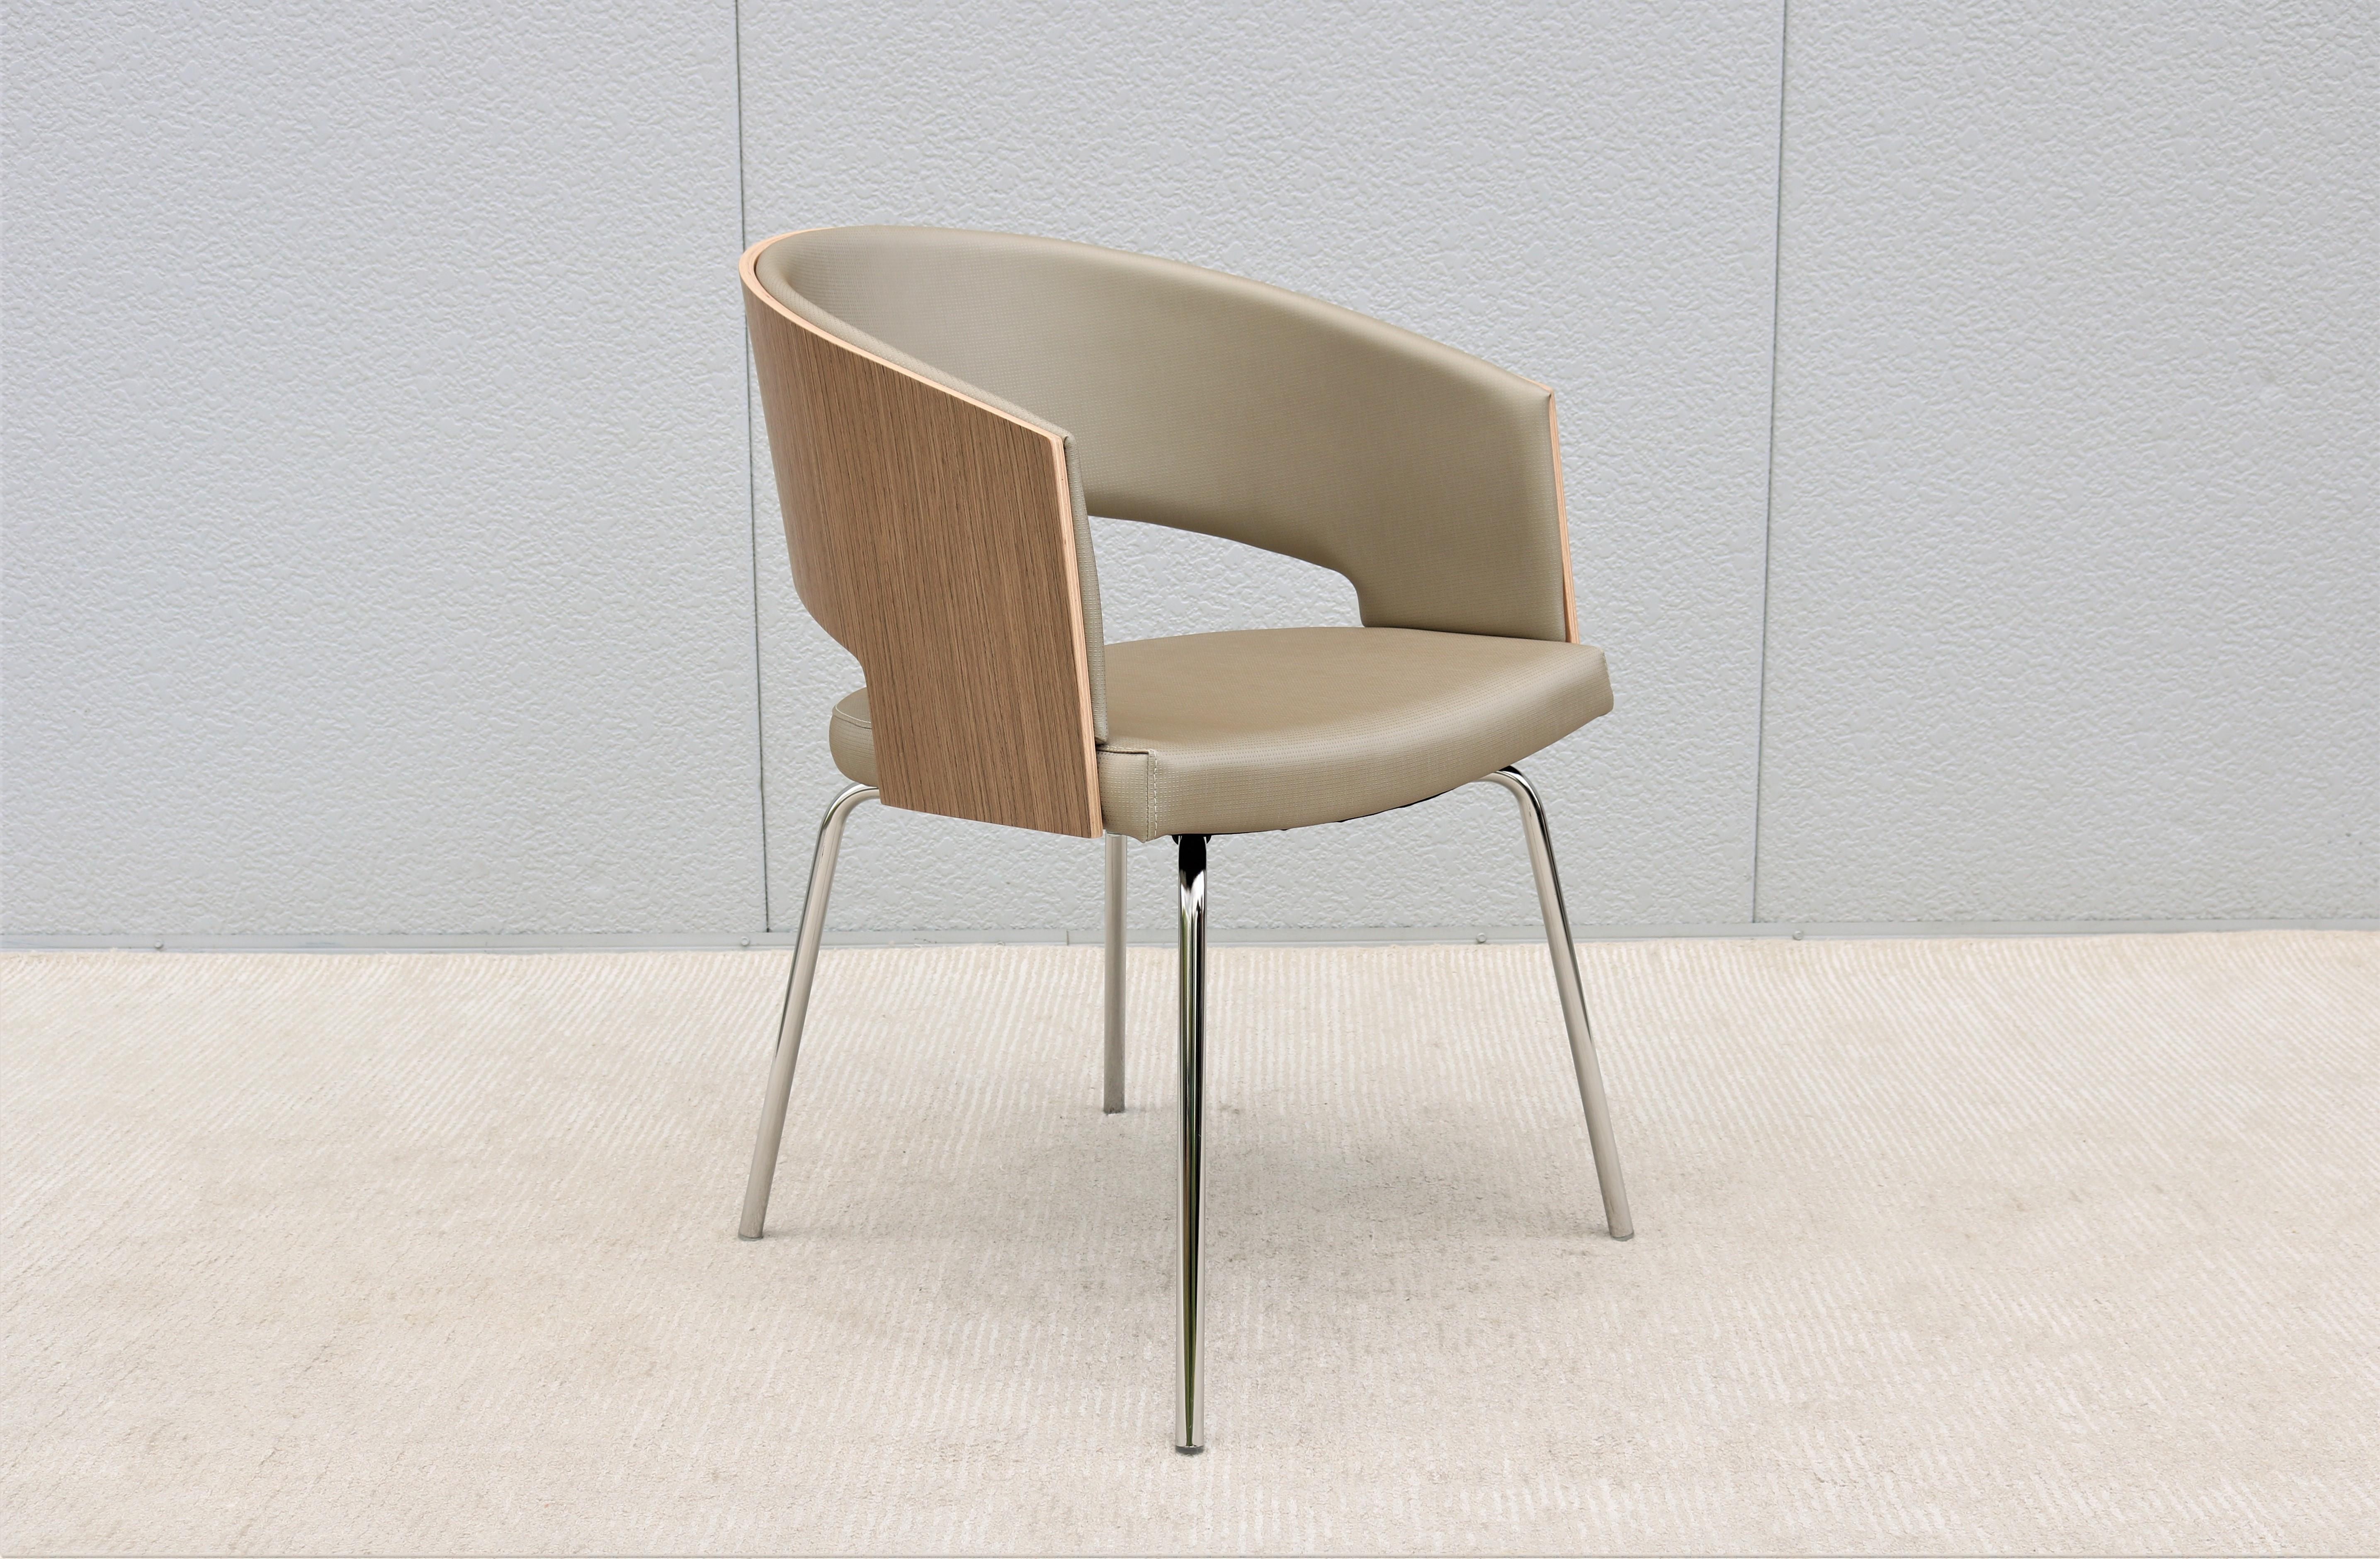 Der Source Botte ist ein vielseitiger und eleganter Stuhl, der entspannten Komfort und außergewöhnliche Unterstützung bietet.
Das auffällige Design zeichnet sich durch eine schön geformte, abgerundete Rückenlehne aus hochwertigem Walnussfurnier